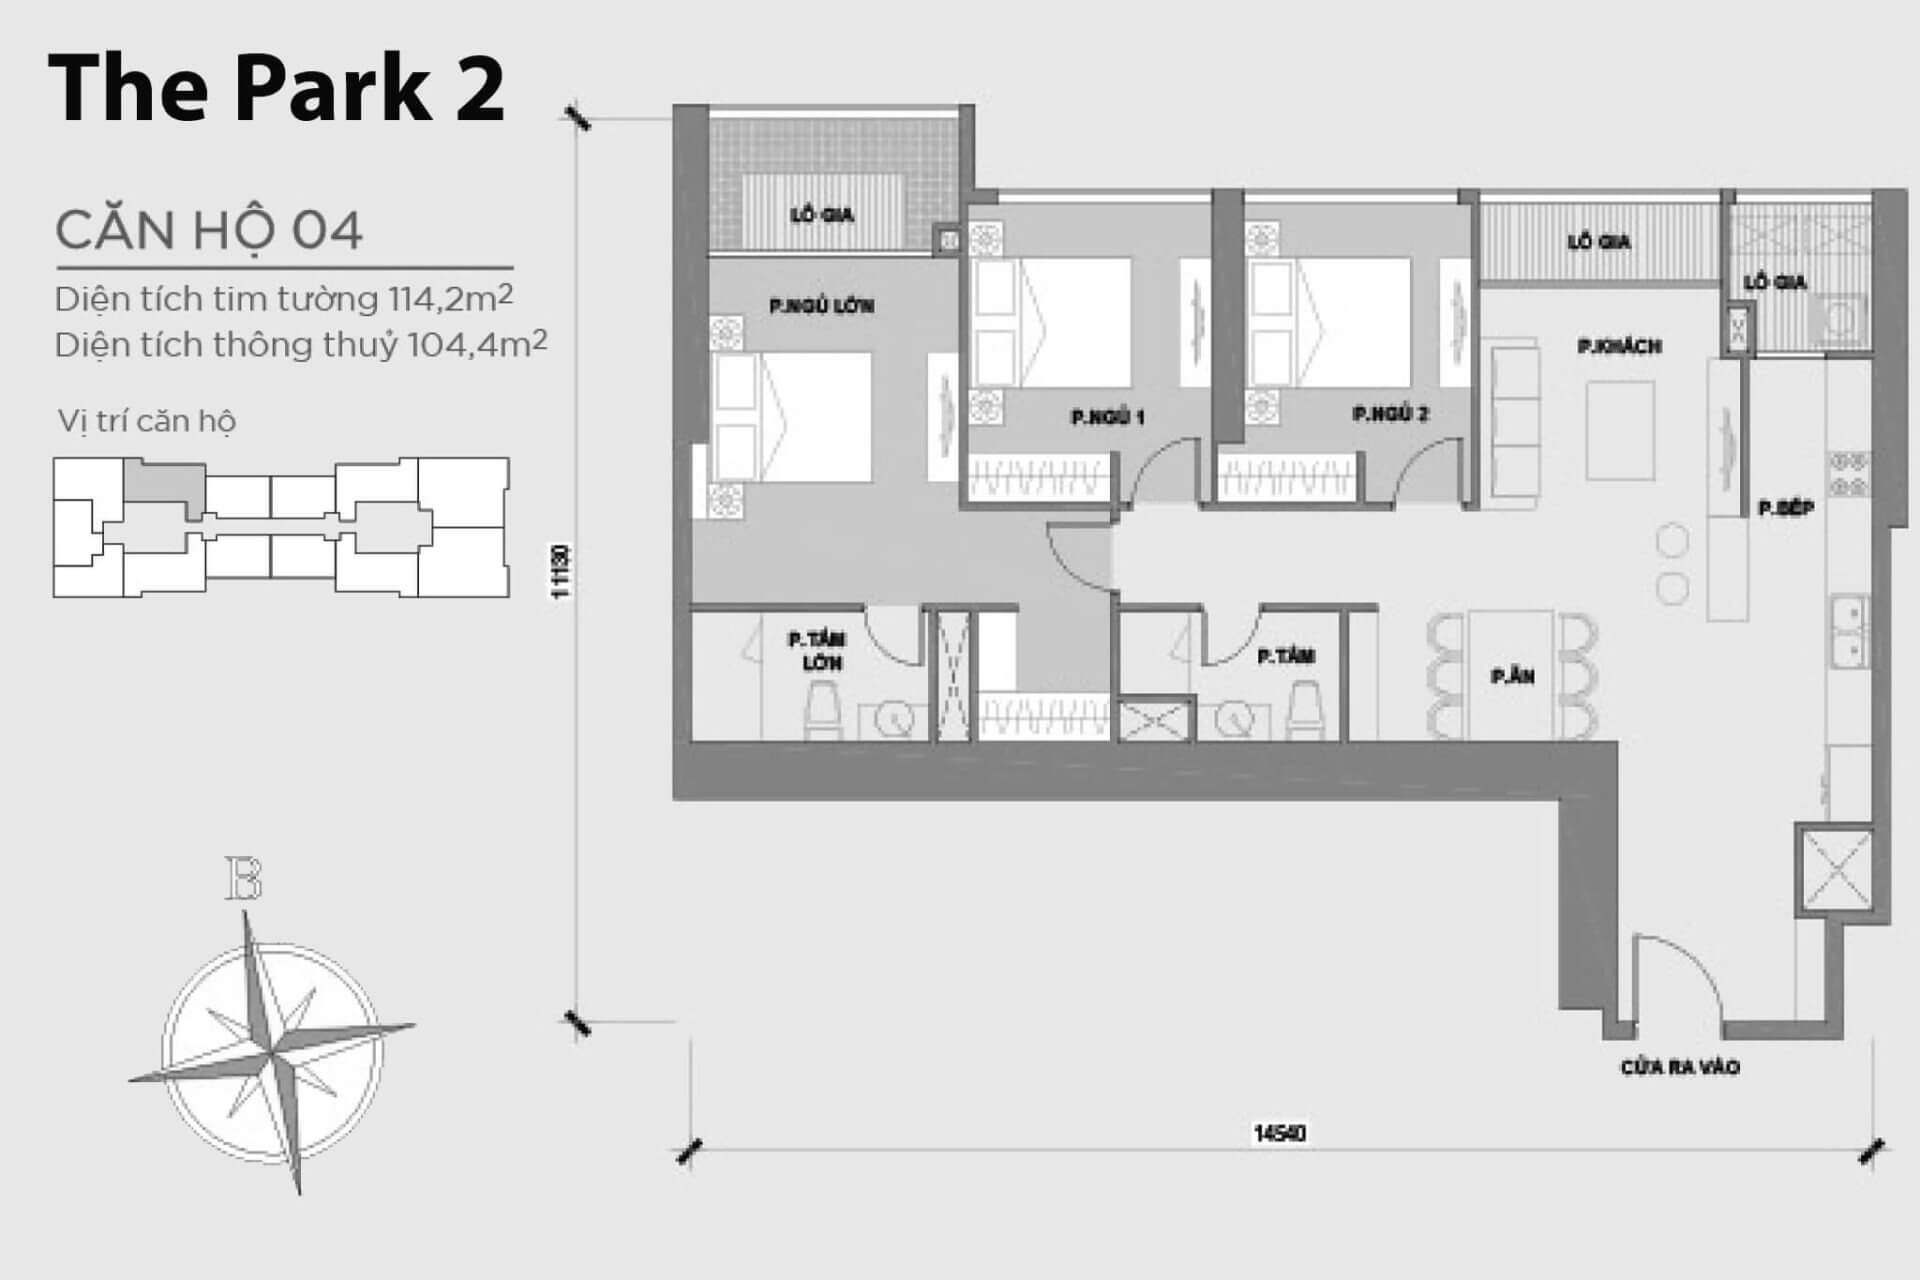 mặt bằng layout căn hộ số 04 Park 2 Vinhomes Central Park